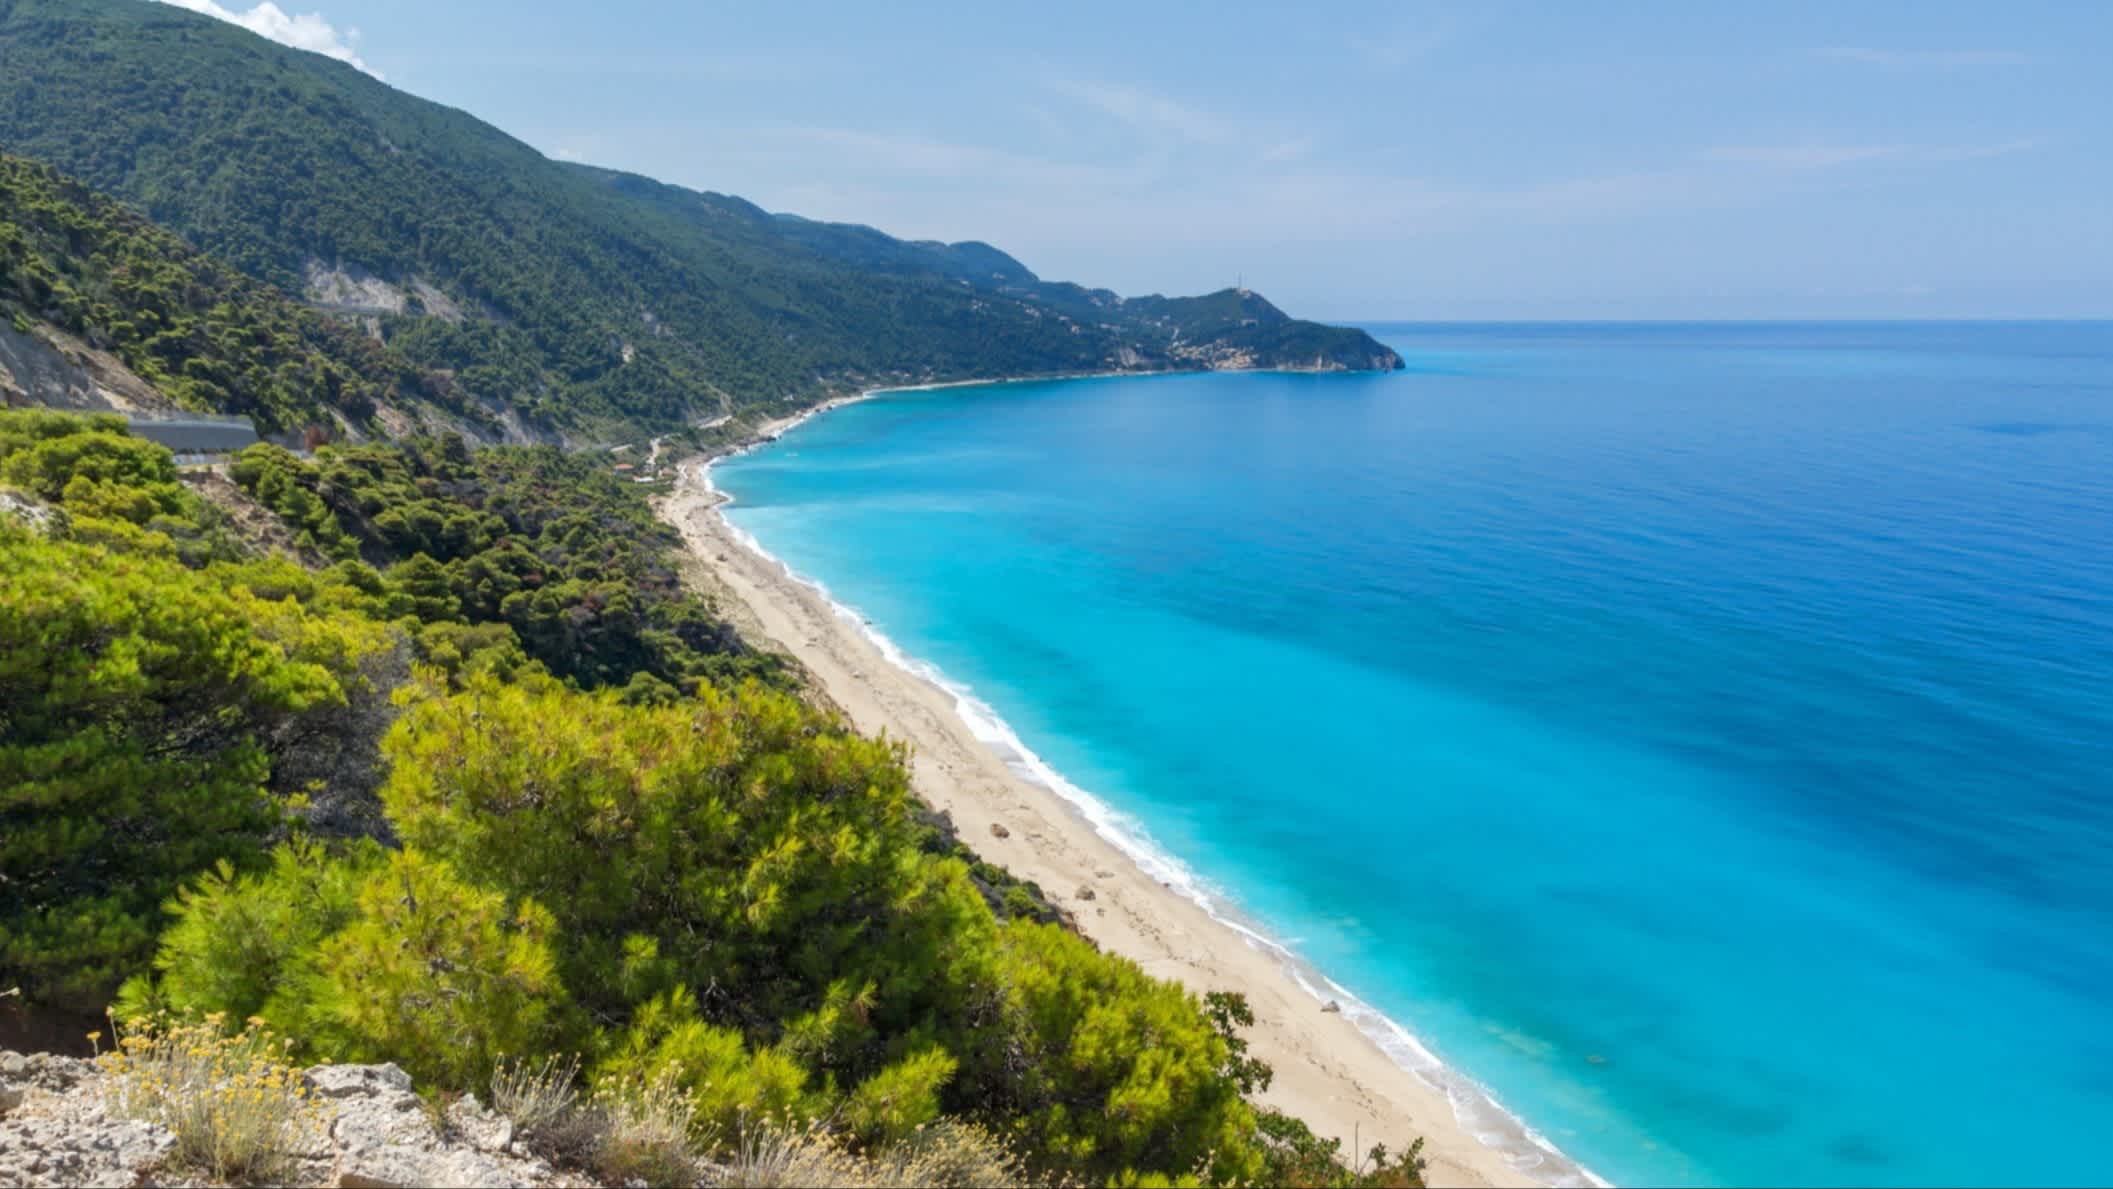 Panoramablick von einem Viewpoint aus auf Vrachos Strand, Lefkada, Griechenland.